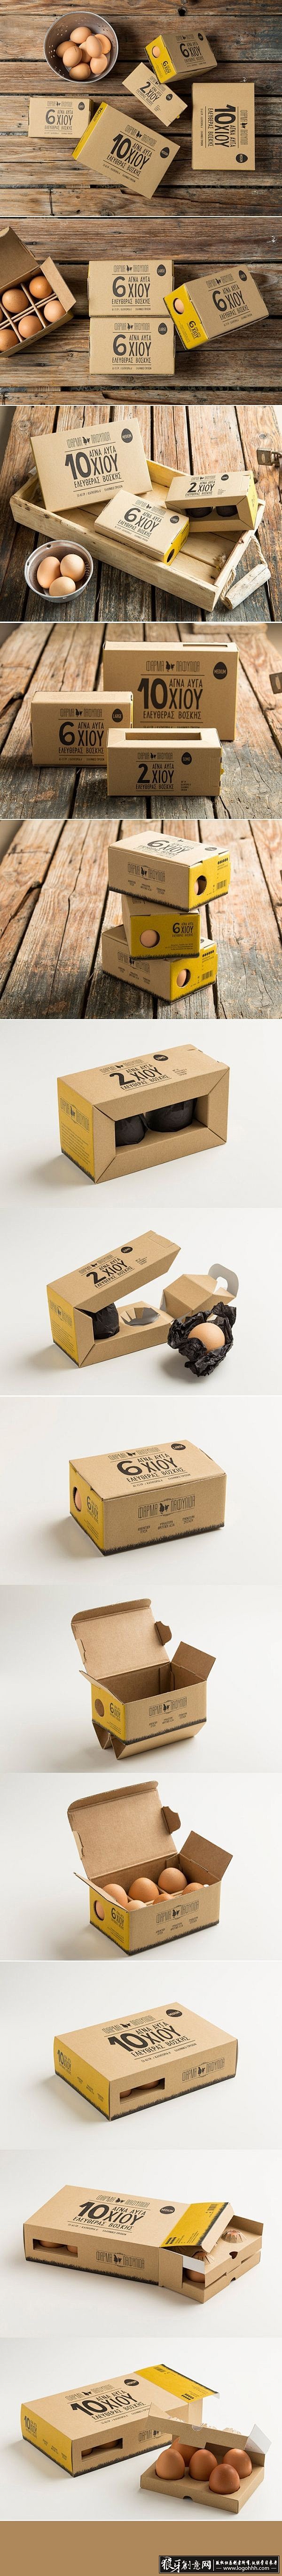 创意鸡蛋包装设计 精美鸡蛋包装 大气鸡蛋...